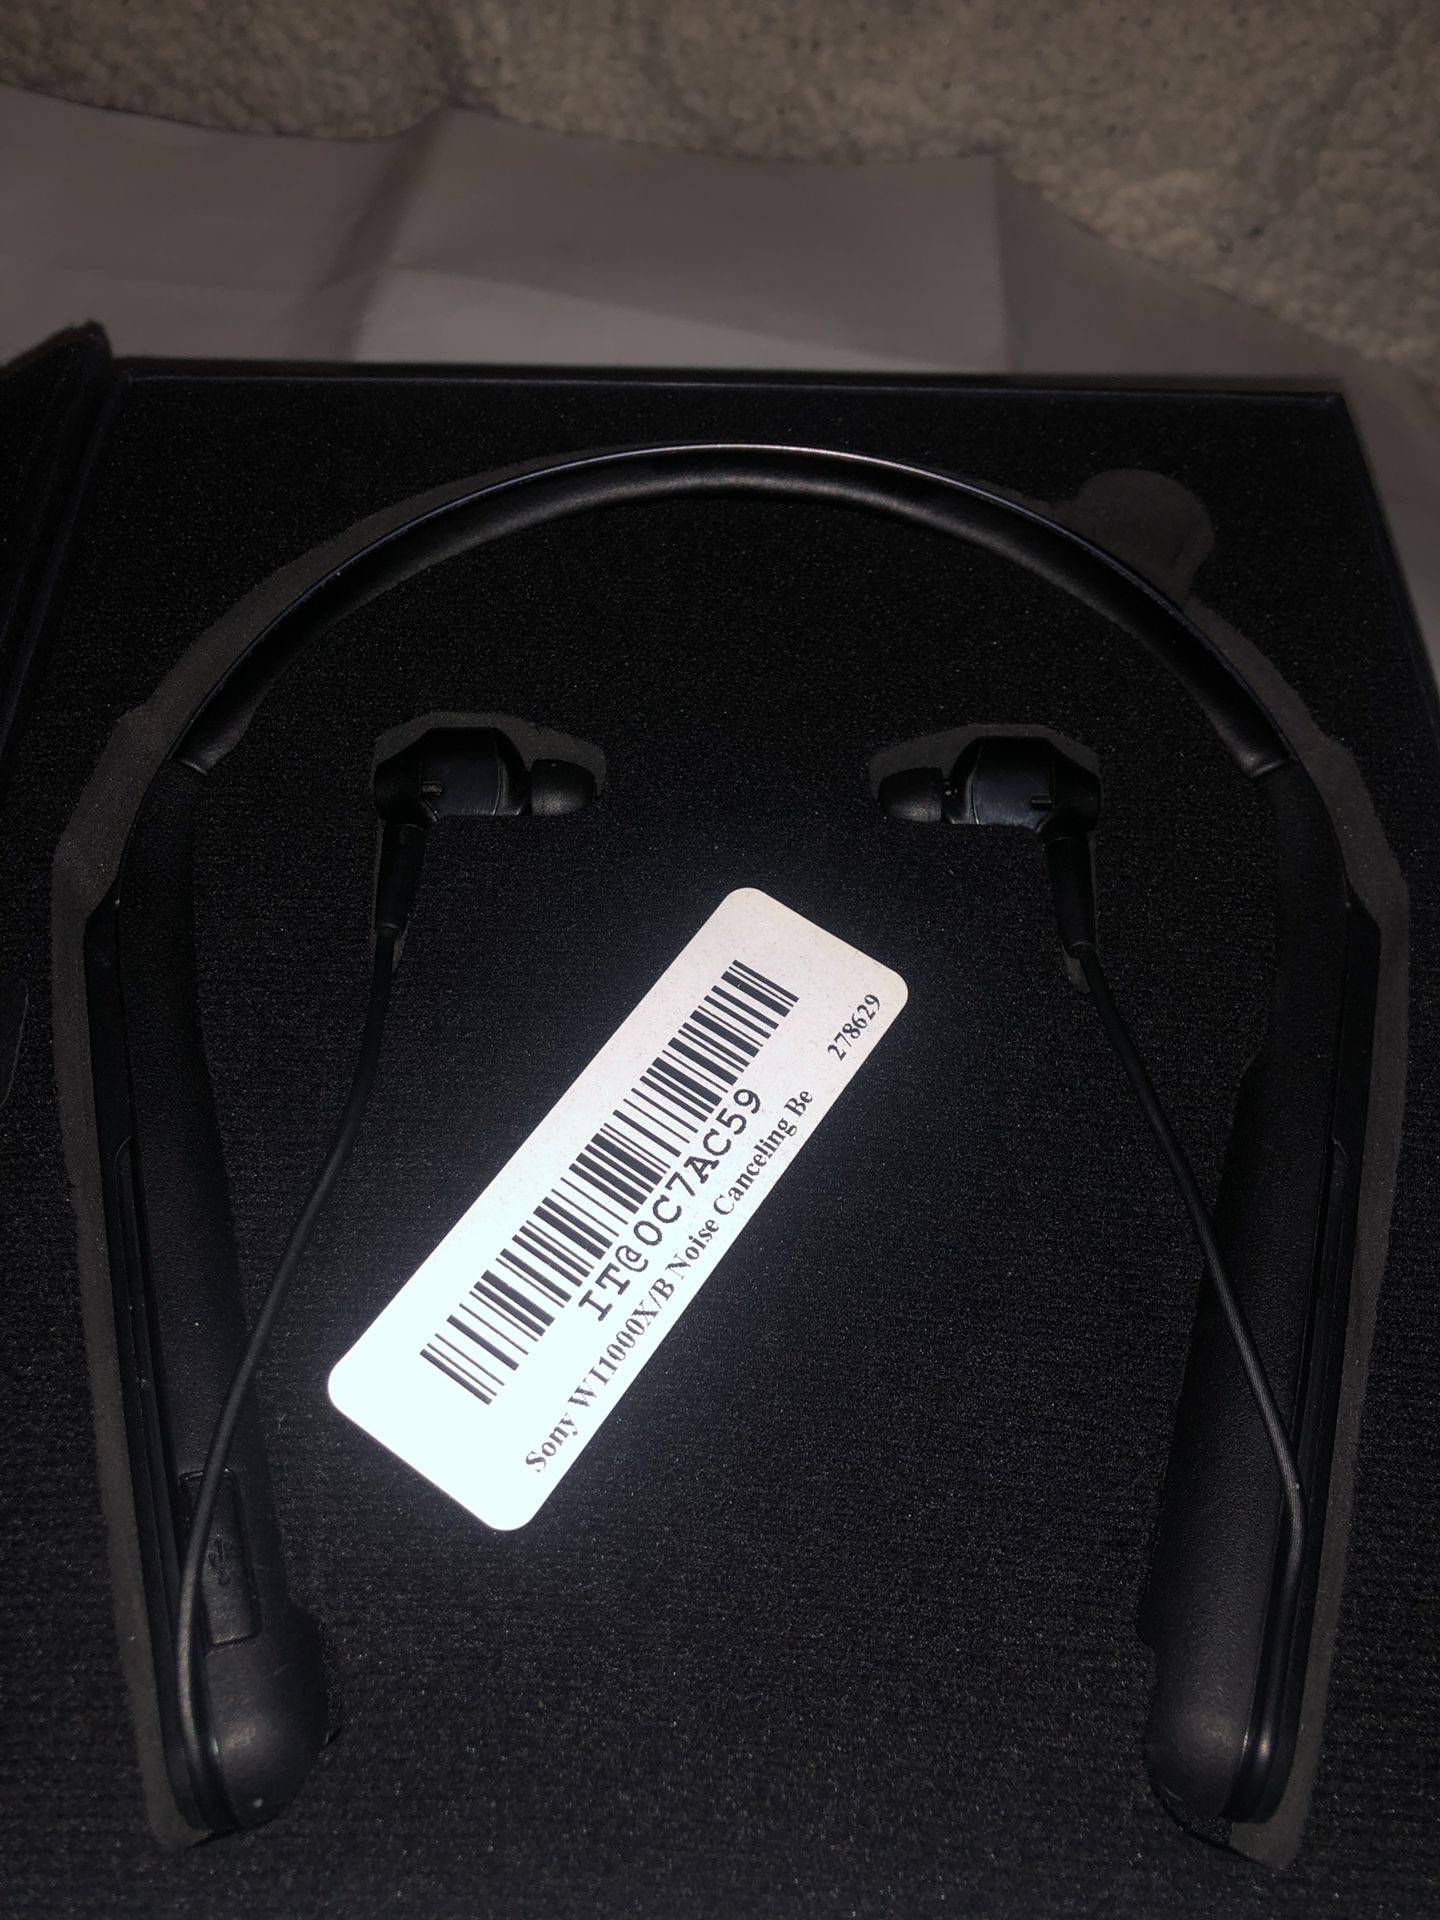 Sony WI-1000X over neck bluetooth headphones